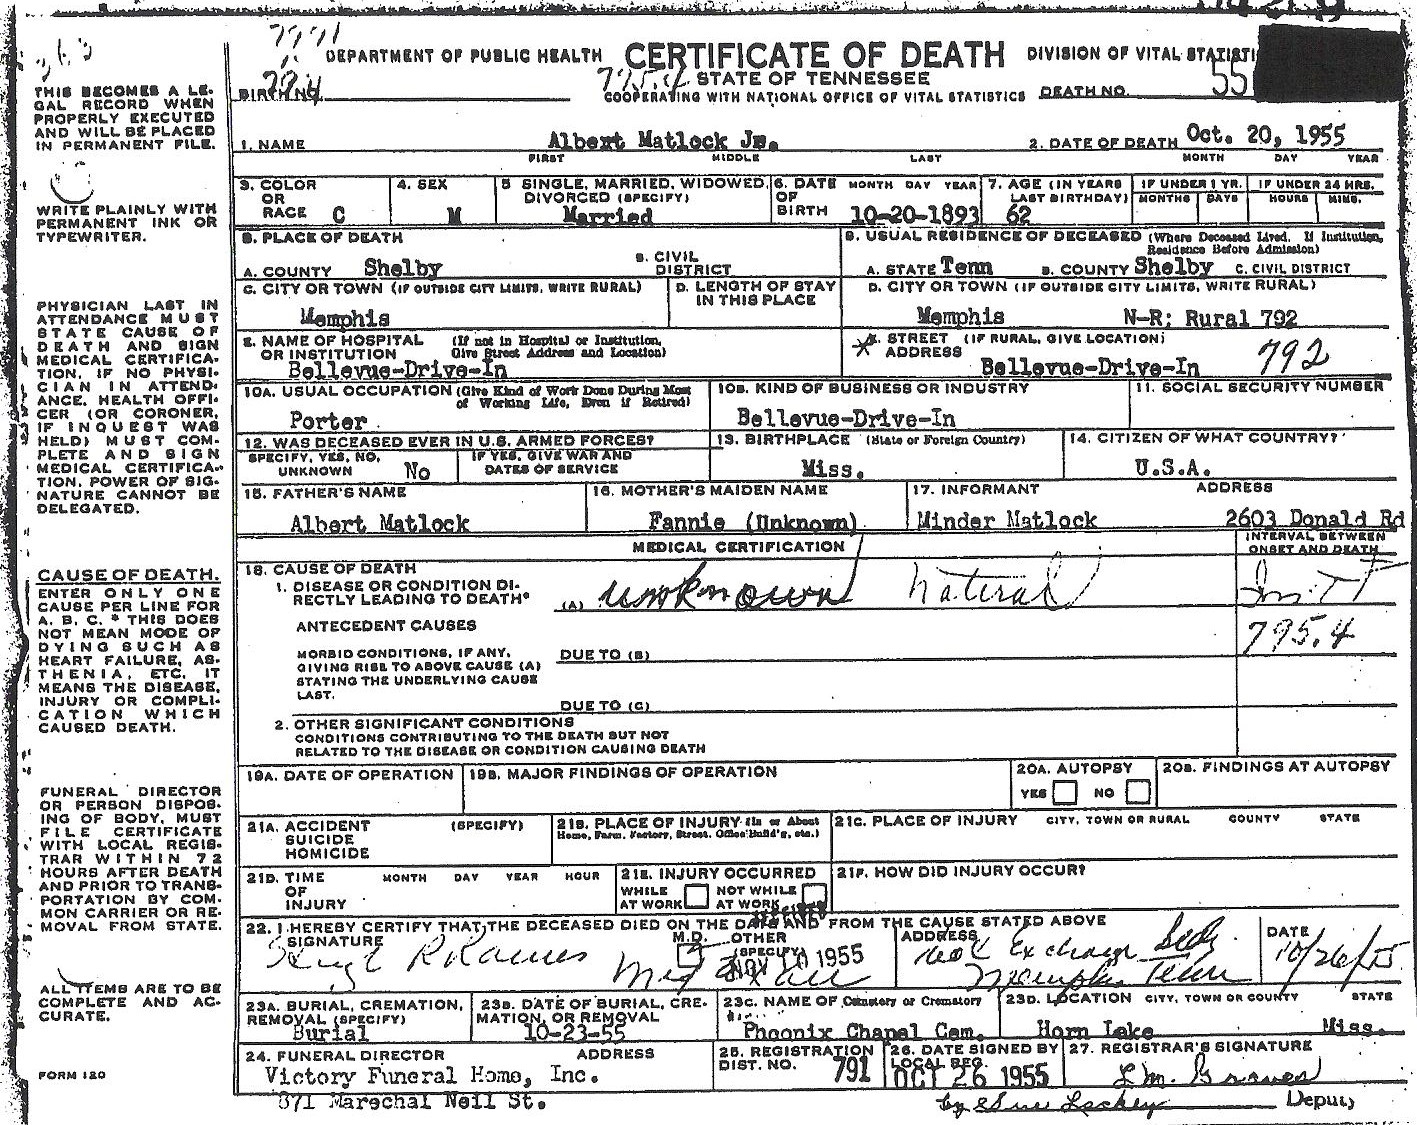 Albert Medlock Jr.'s Death Certificate